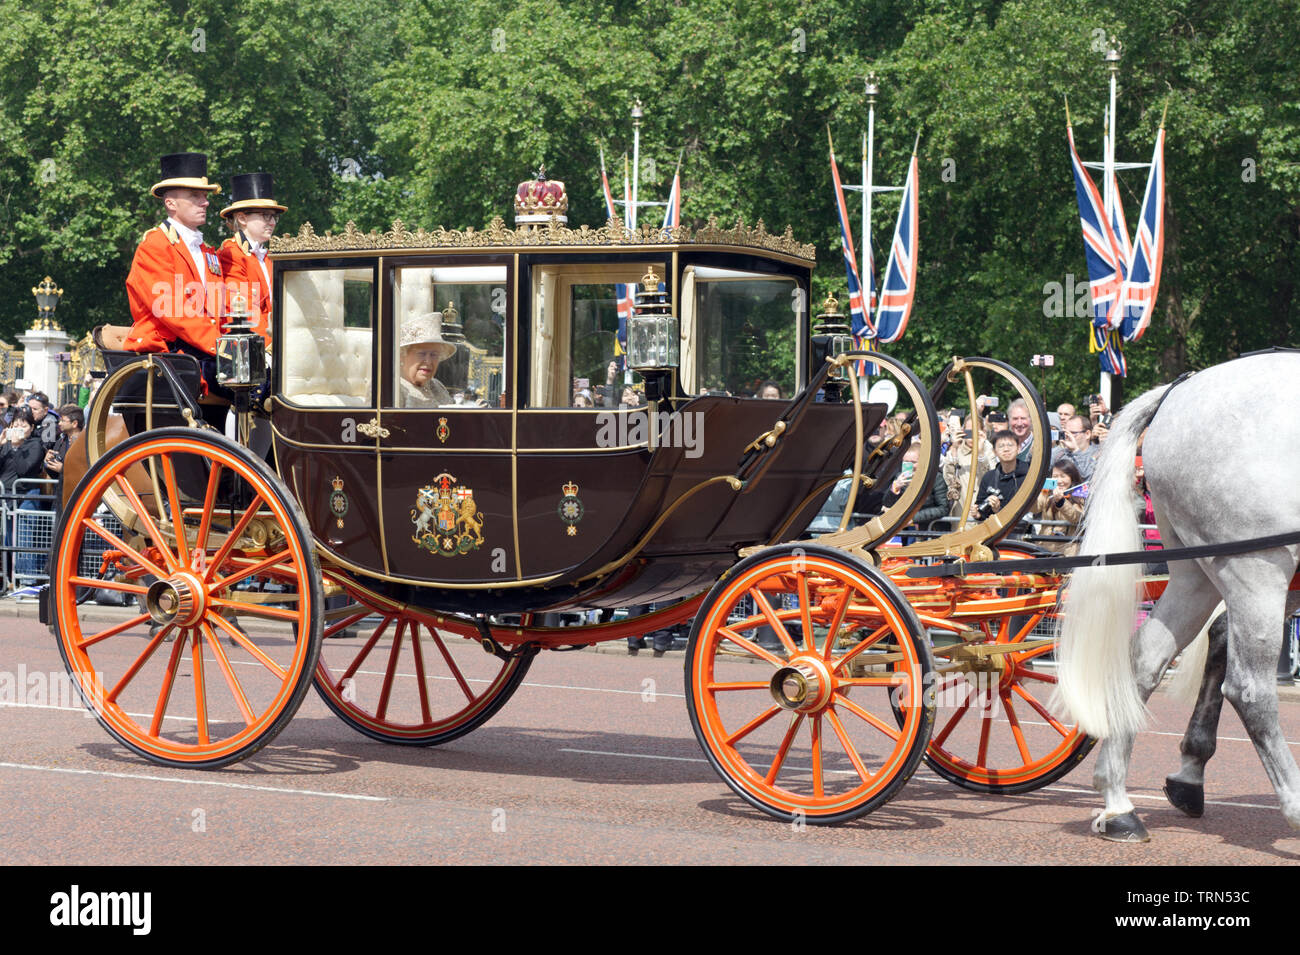 La Reine d'Angleterre dans l'entraîneur de l'État écossais, de quitter le palais de Buckingham pour la parade la couleur 2019 Banque D'Images